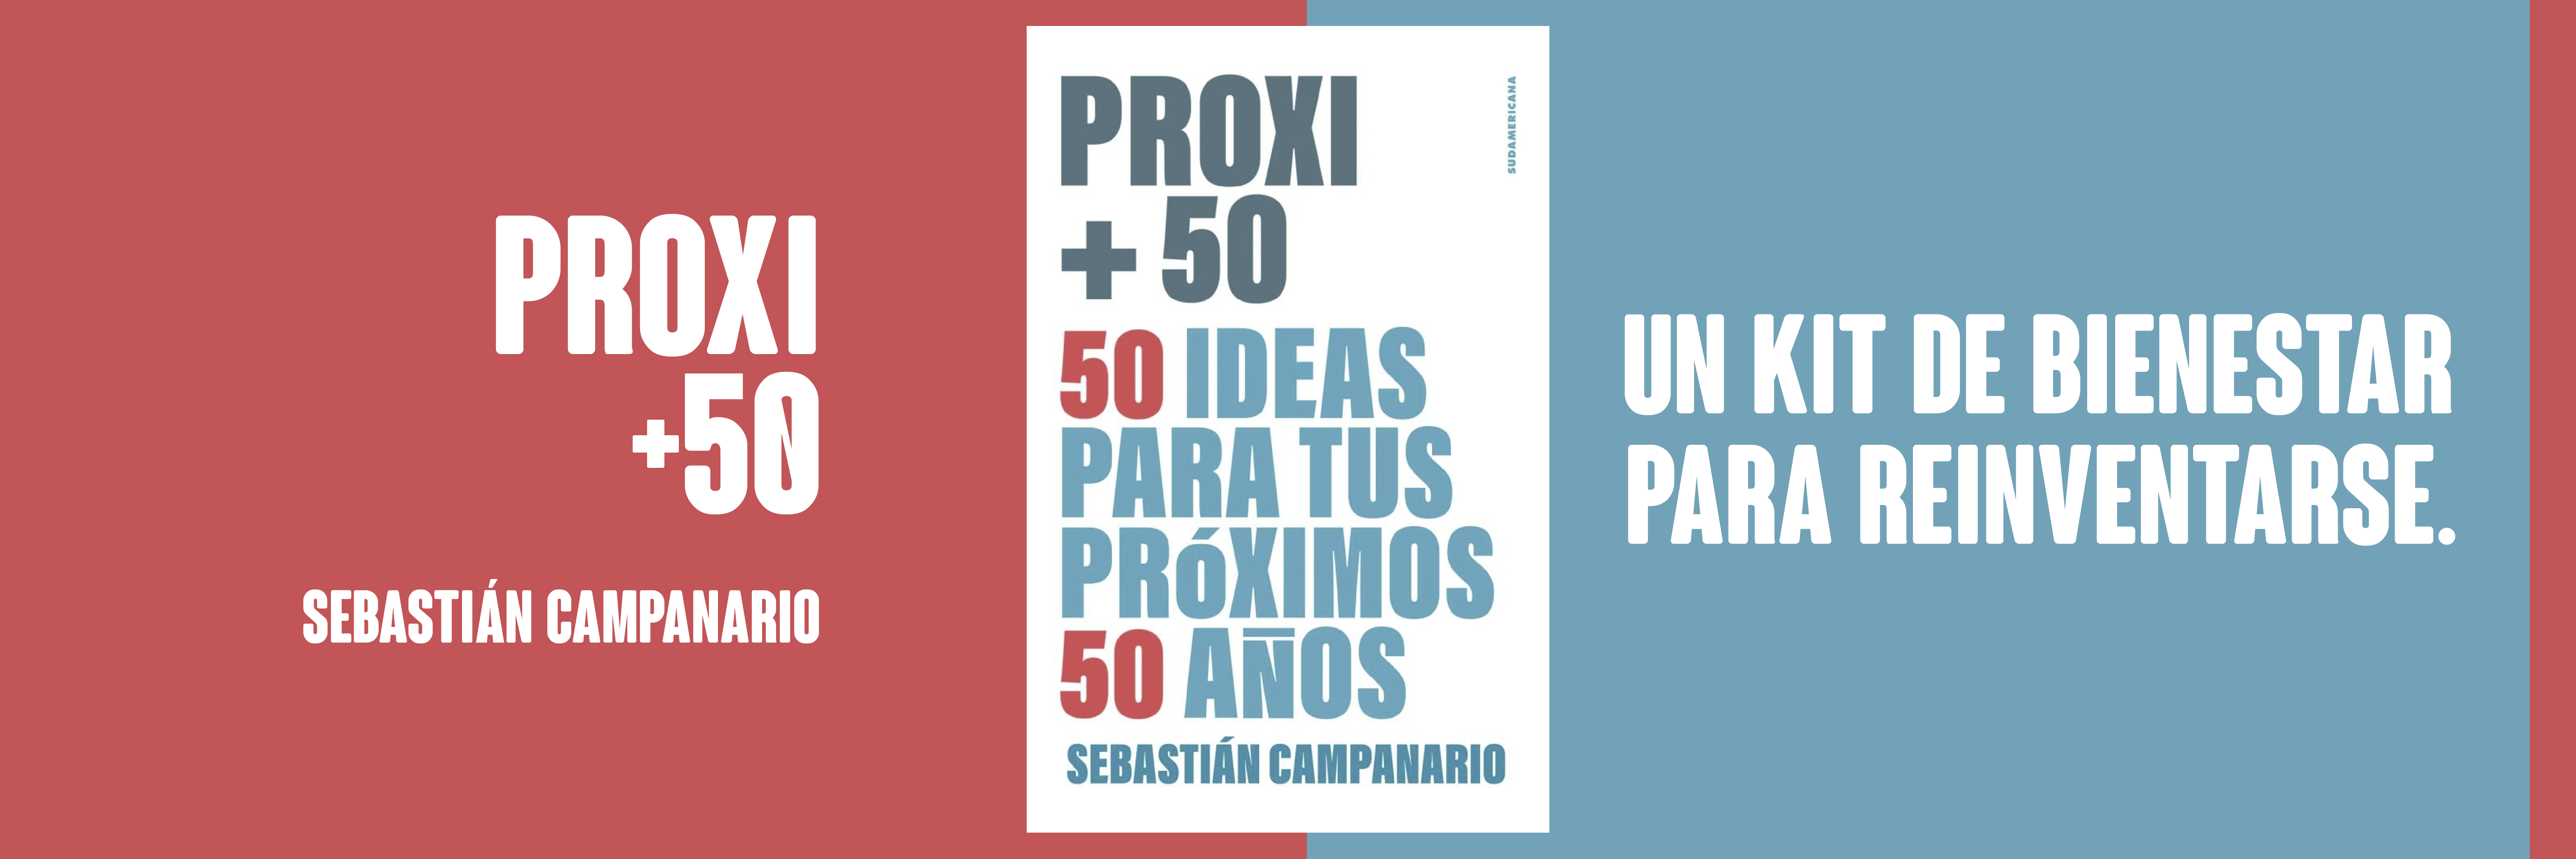 Proxi +50